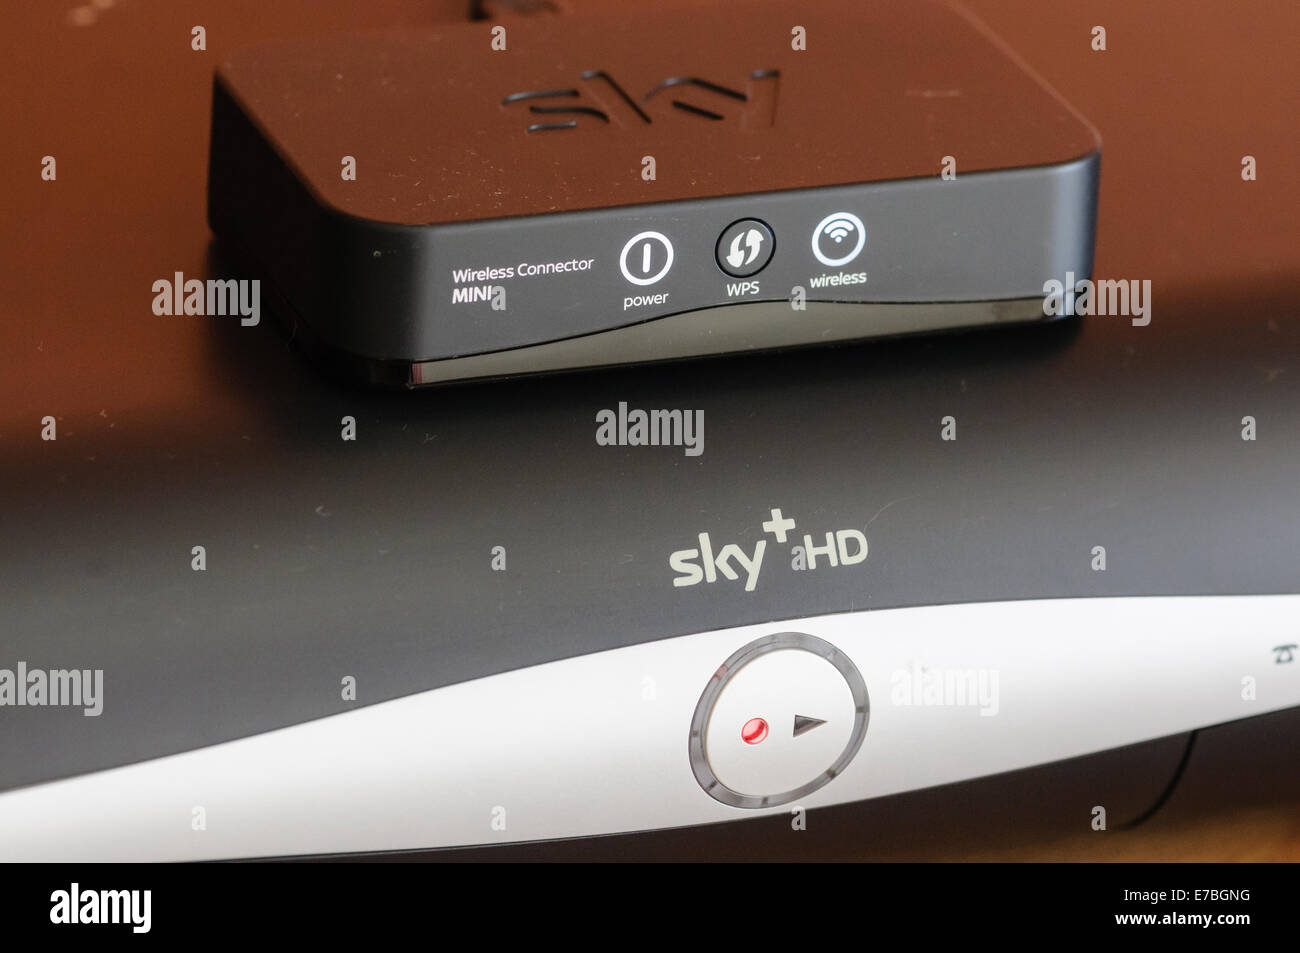 Sky+ HD scatola con una rete wifi adattatore per connettore per abilitare l'accesso a internet Foto Stock